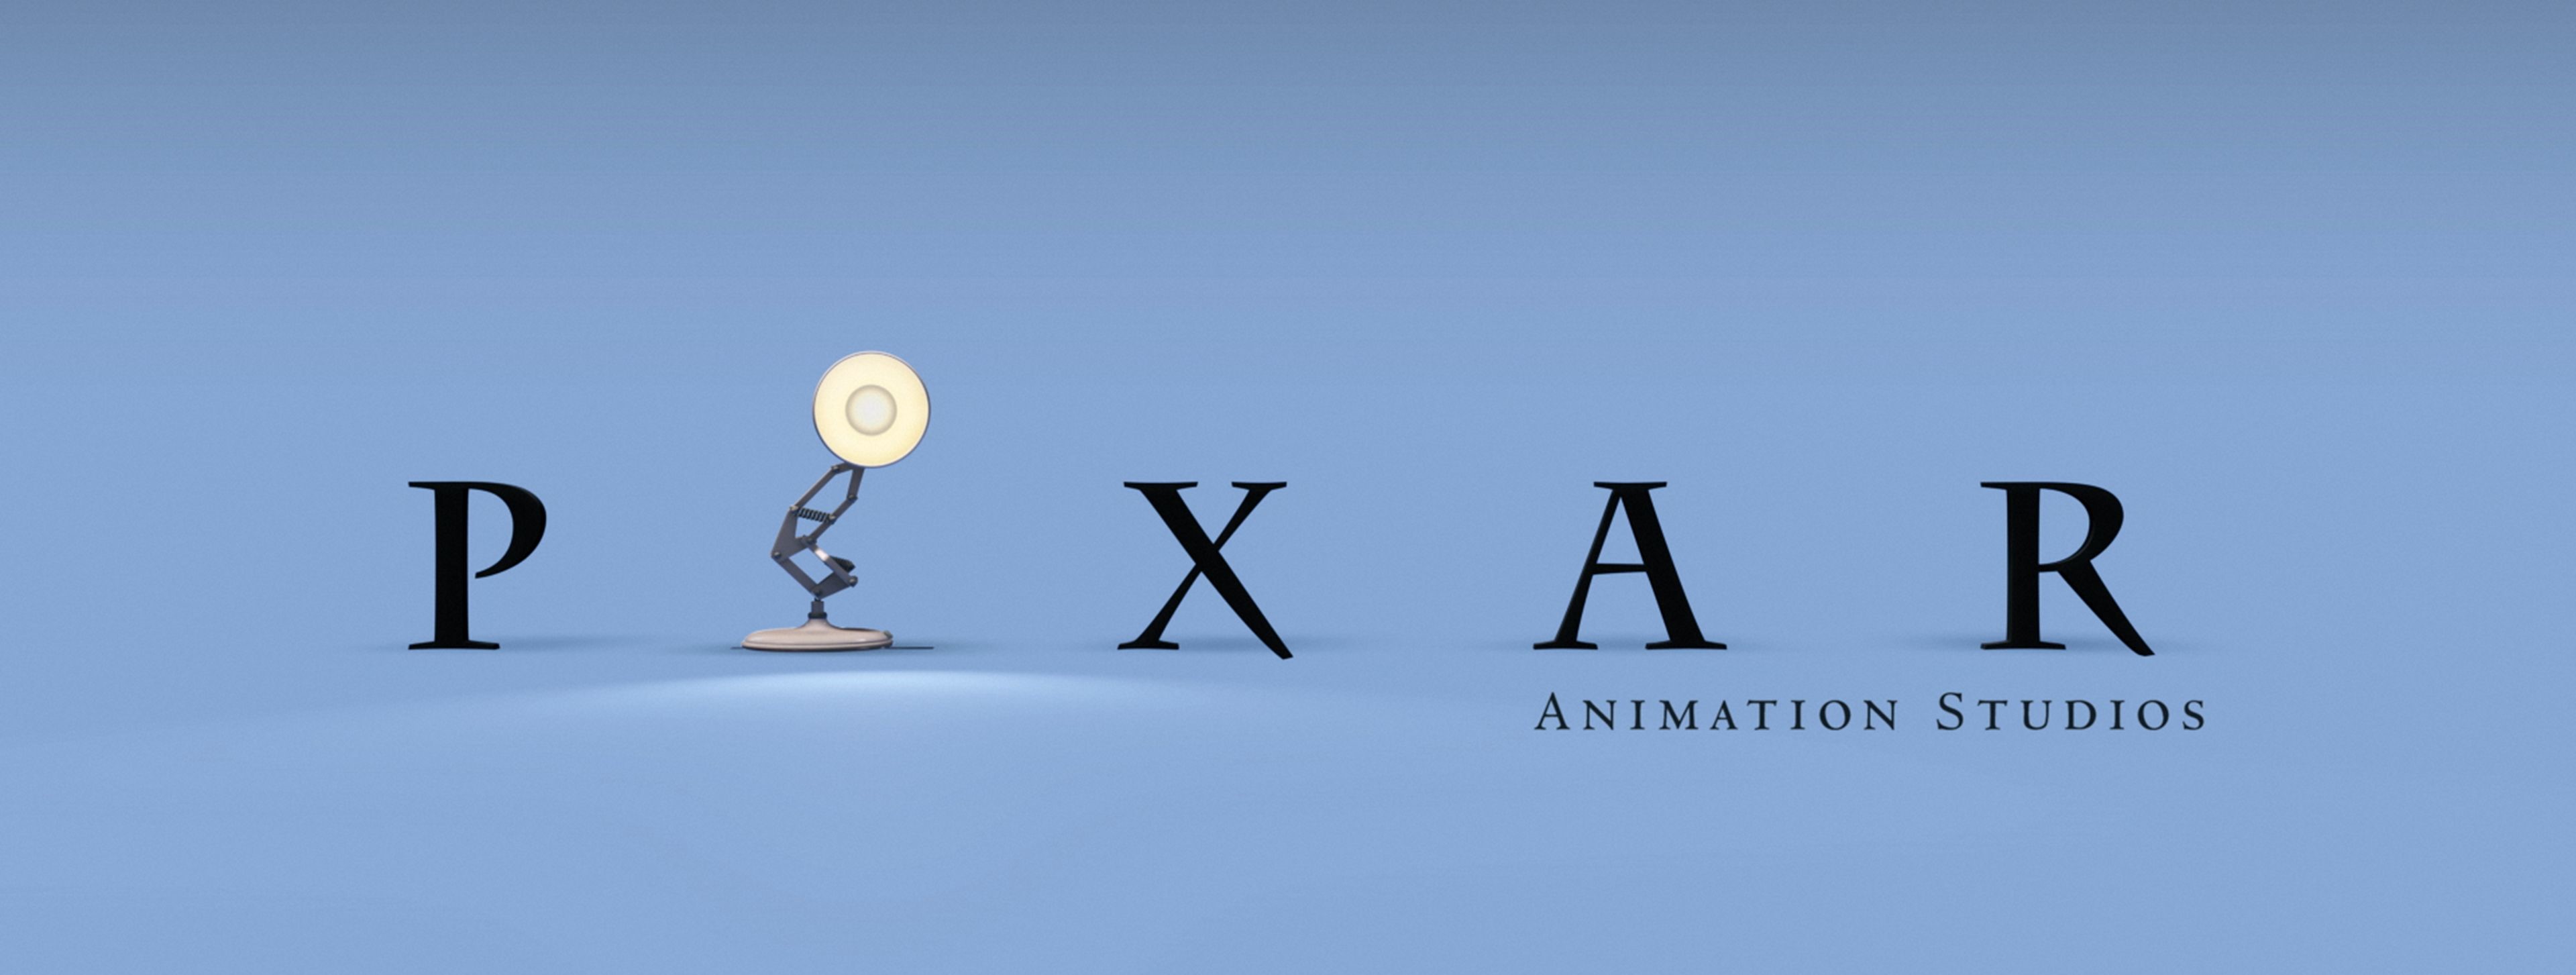 Barnfilmer från Pixar.